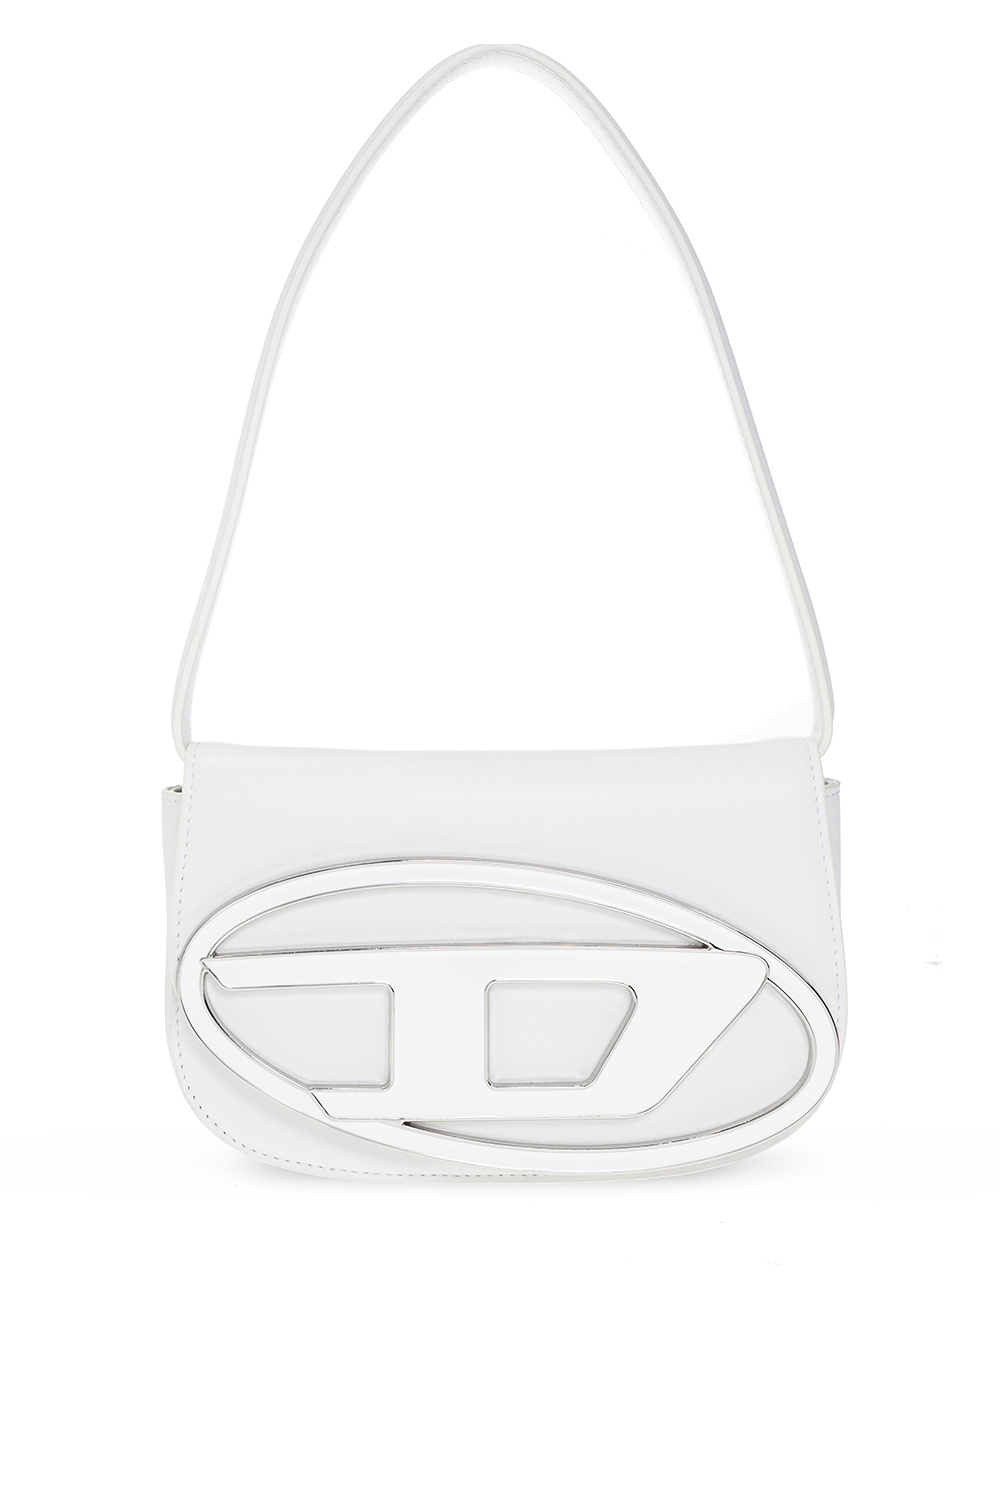 White '1DR' shoulder bag Diesel - Vitkac Canada